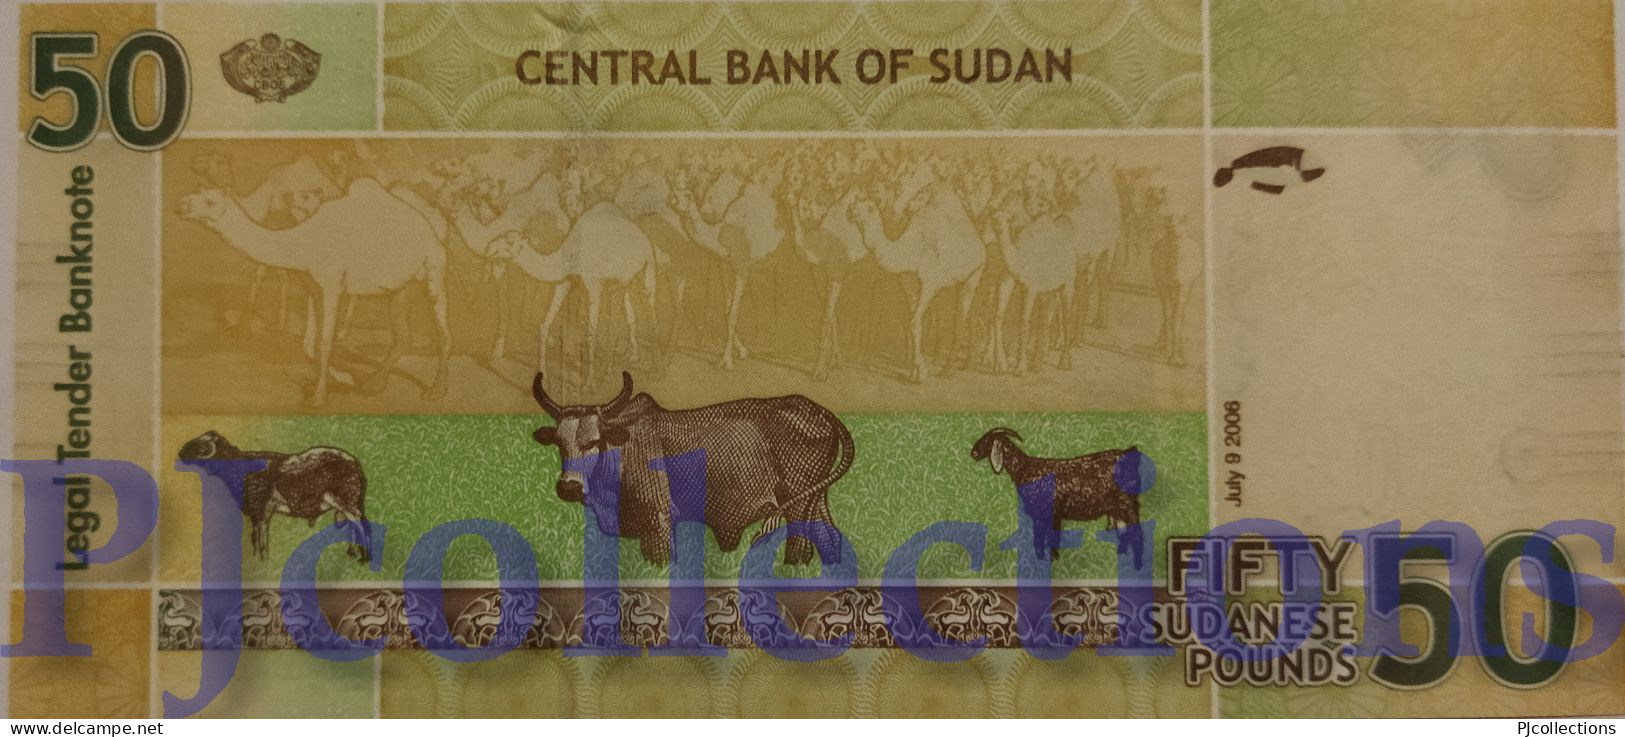 SUDAN 50 POUNDS 2006 PICK 69 UNC - Sudan